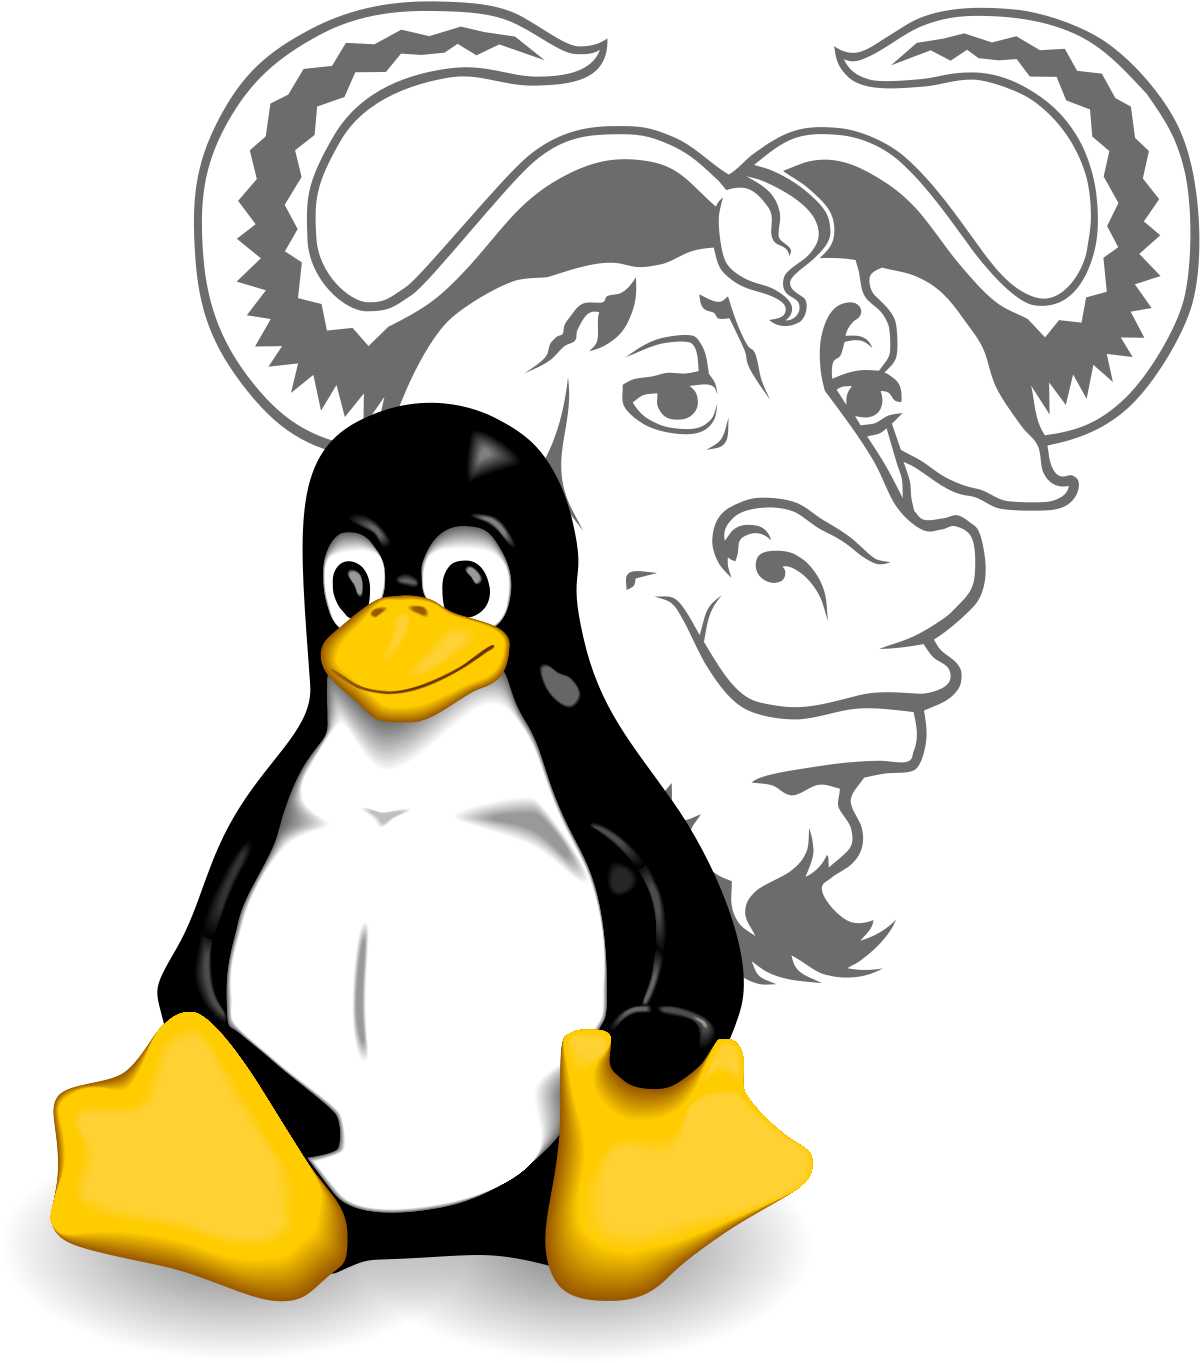 Nueva vulnerabilidad crítica en Linux denominada Sequoia